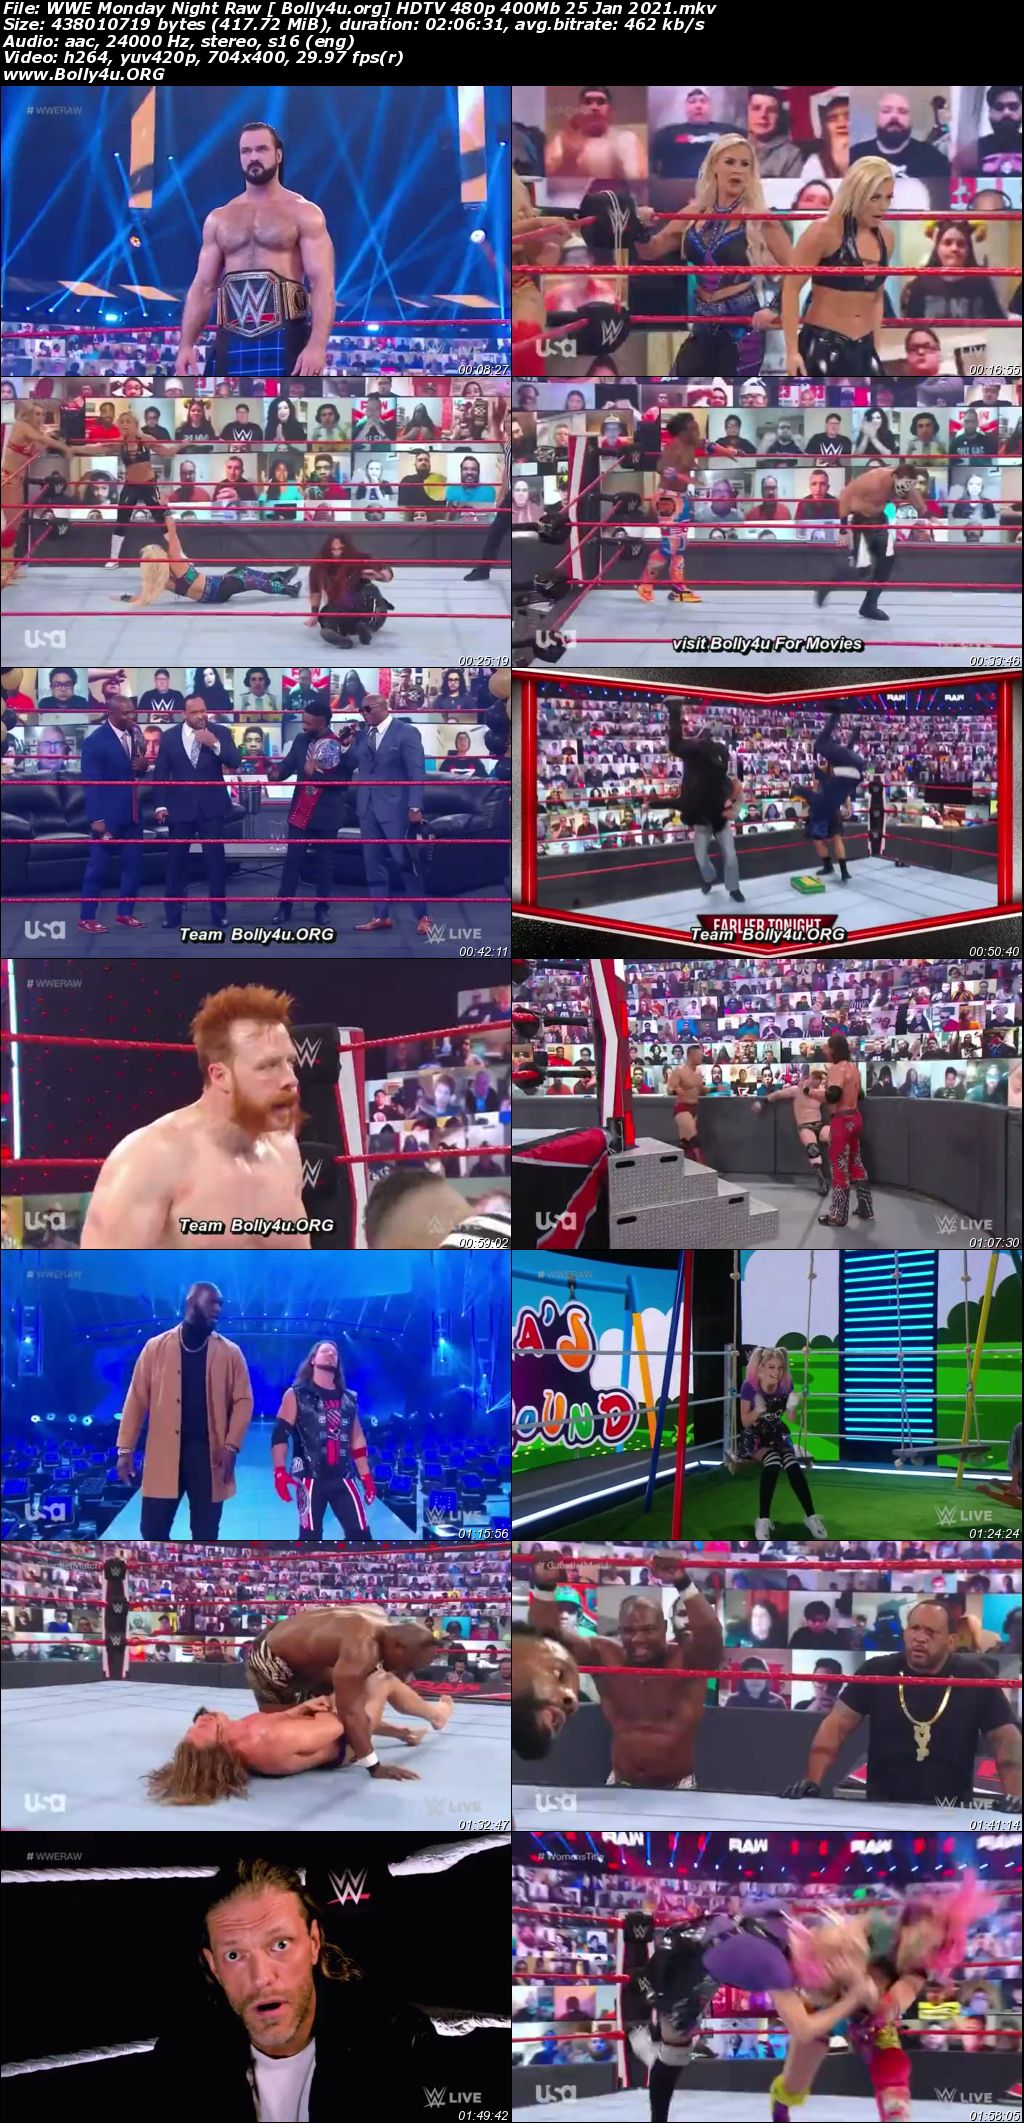 WWE Monday Night Raw HDTV 480p 400Mb 25 Jan 2021 Download